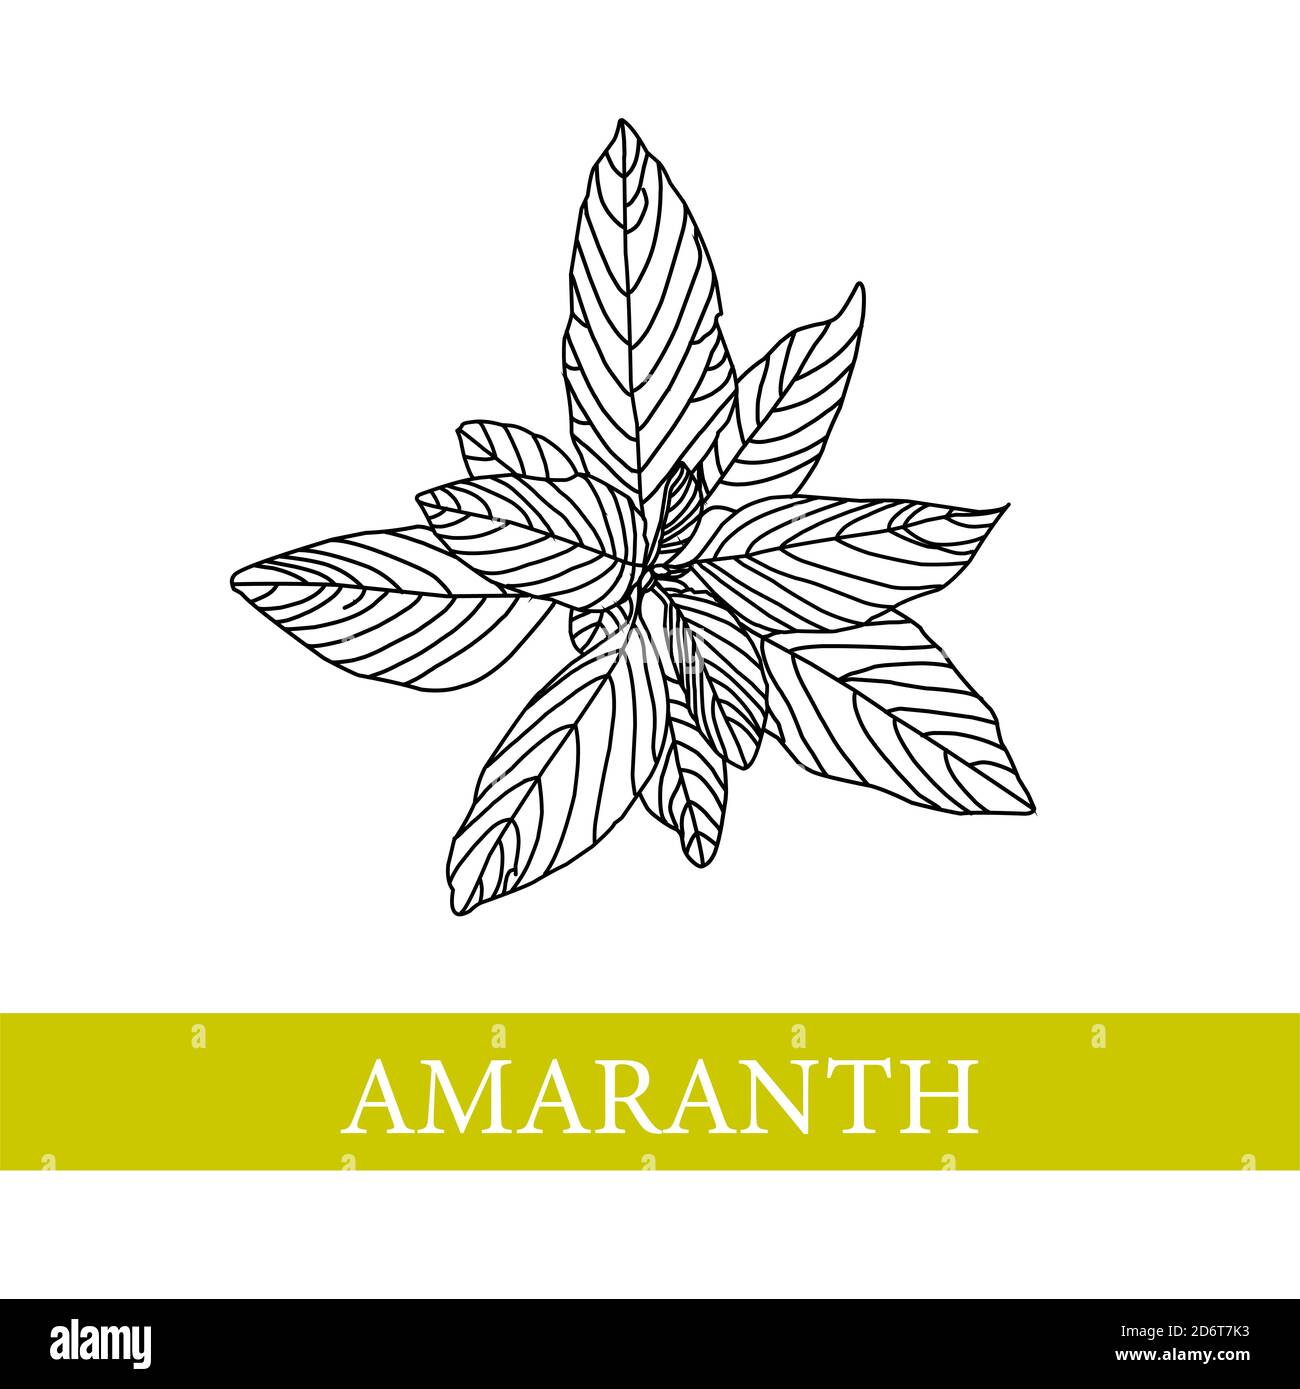 amaranth plant. botanical illustration. Amaranth. Medical plants Stock Photo